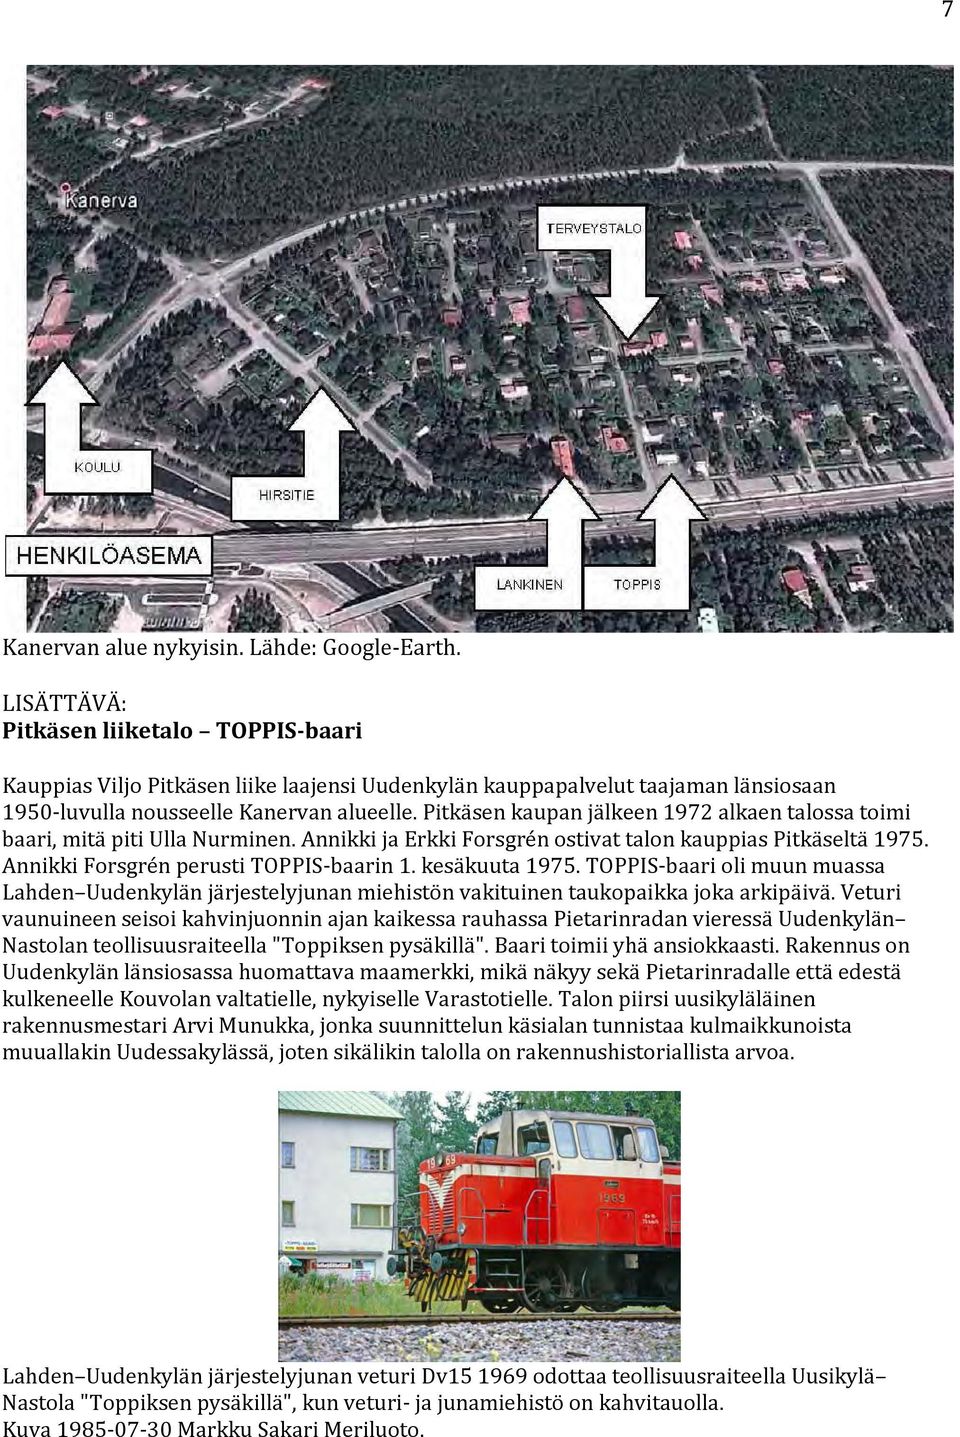 Pitkäsen kaupan jälkeen 1972 alkaen talossa toimi baari, mitä piti Ulla Nurminen. Annikki ja Erkki Forsgrén ostivat talon kauppias Pitkäseltä 1975. Annikki Forsgrén perusti TOPPIS baarin 1.